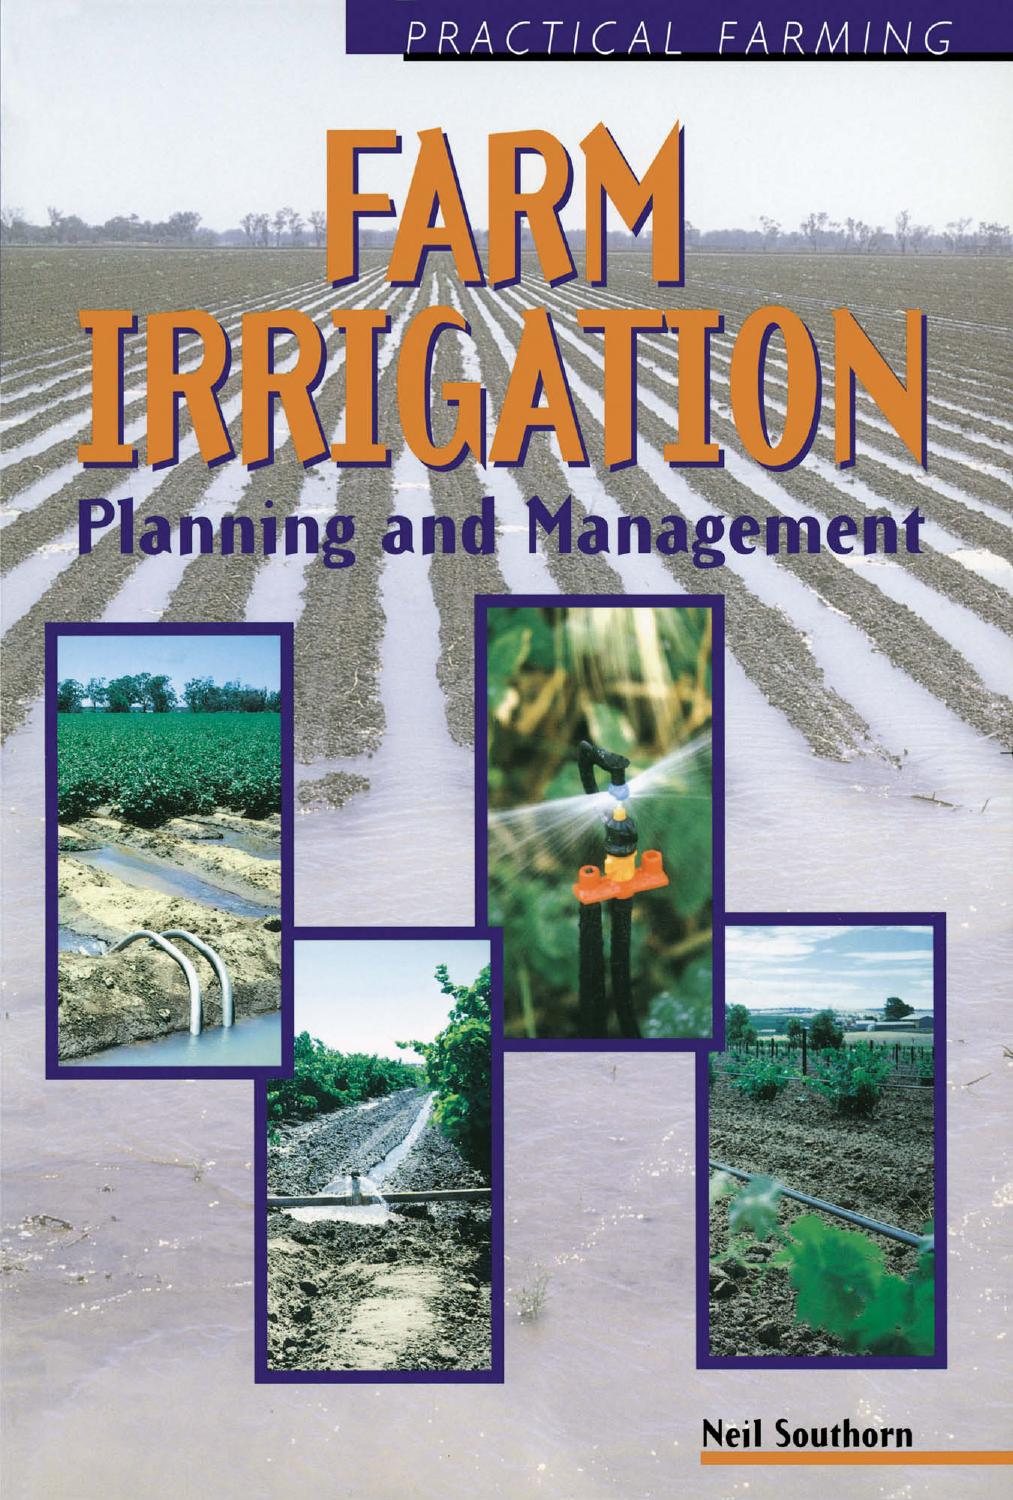 Farm Irrigation (Practical Farming) 1997